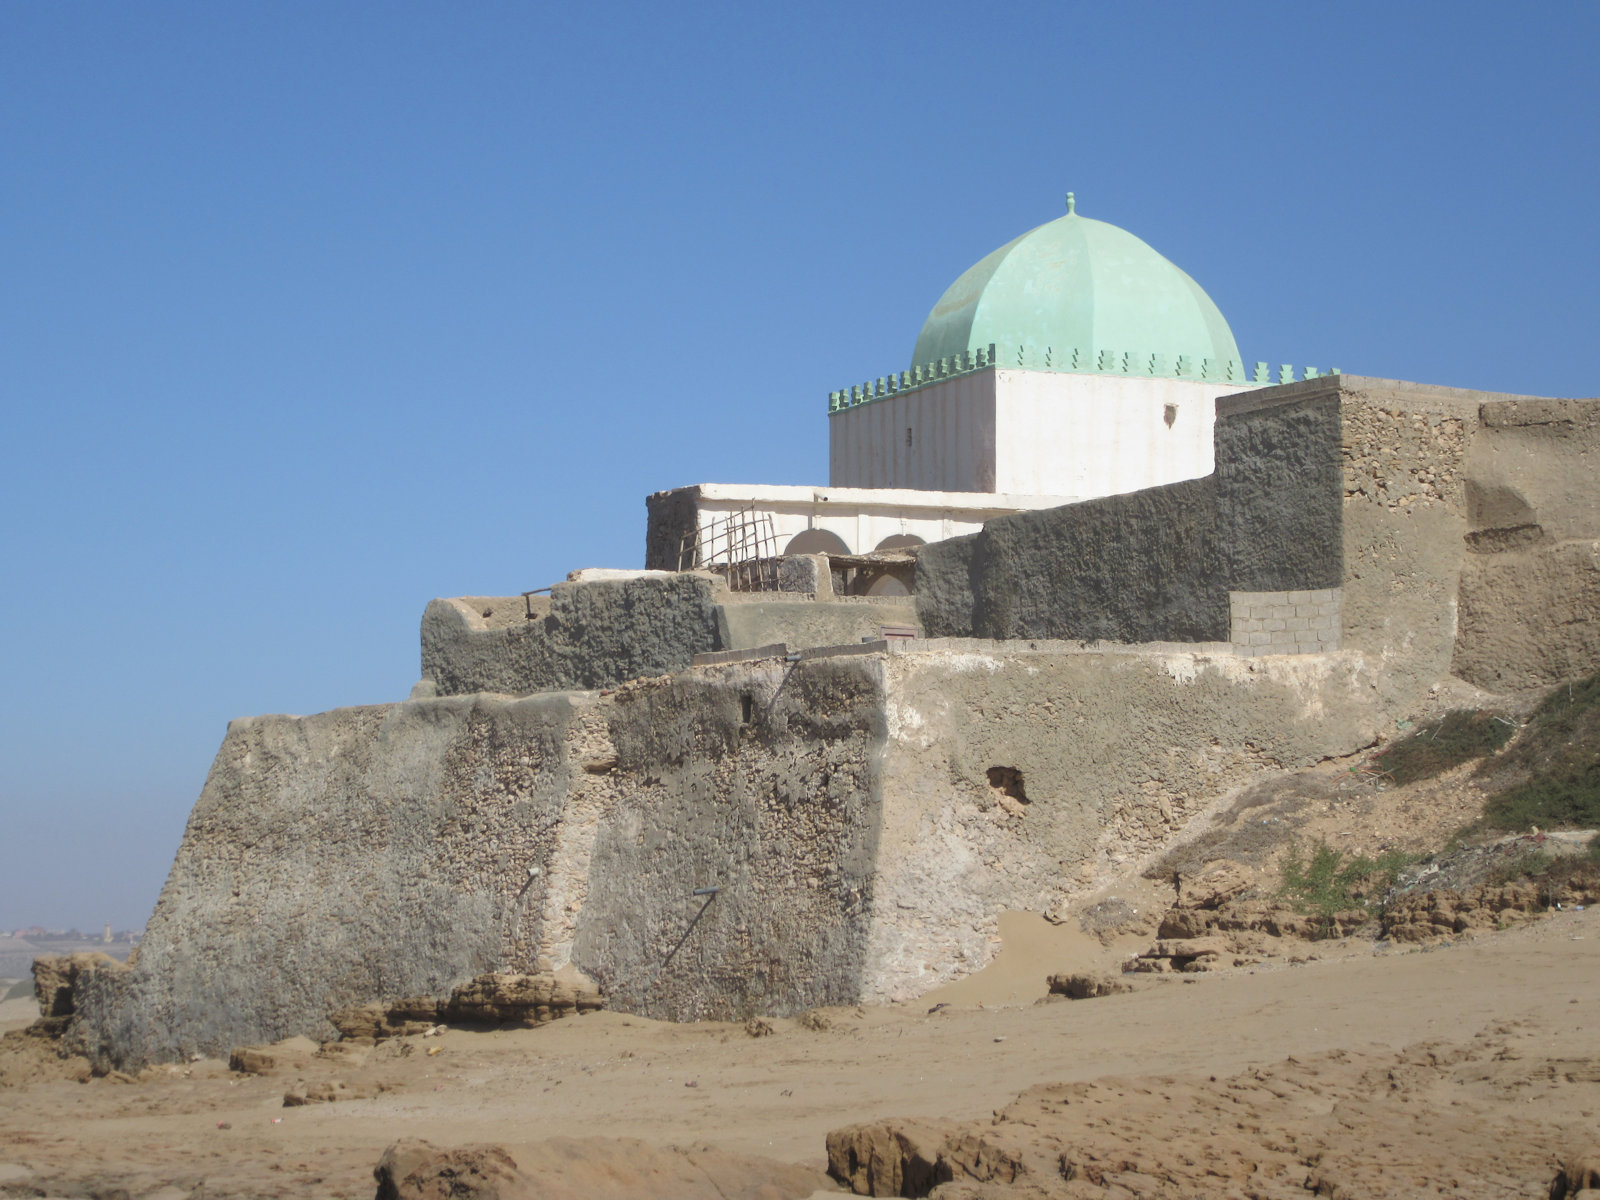 Marabout - muslimisches Heiligengrab und -gedenkstätte - in Sidi Ouassai an der Mündung des Flusses Massa in den Atlantik in Marokko - eine der mehreren Stellen, an der laut Überlieferung Jona vom Meerestier wieder ausgespuckt wurde